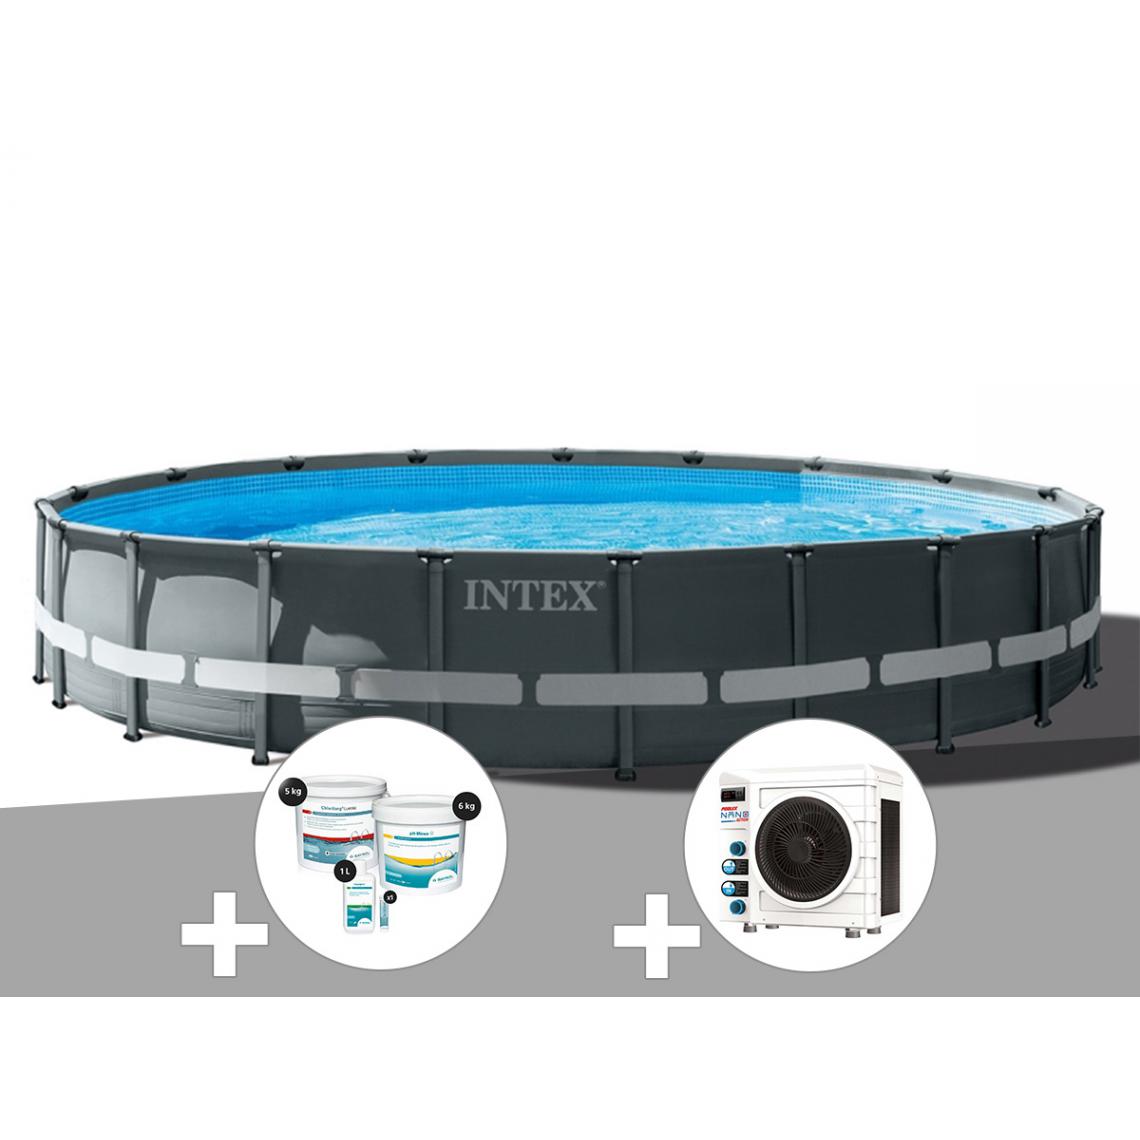 Intex - Kit piscine tubulaire Intex Ultra XTR Frame ronde 6,10 x 1,22 m + Kit de traitement au chlore + Pompe à chaleur - Piscine Tubulaire